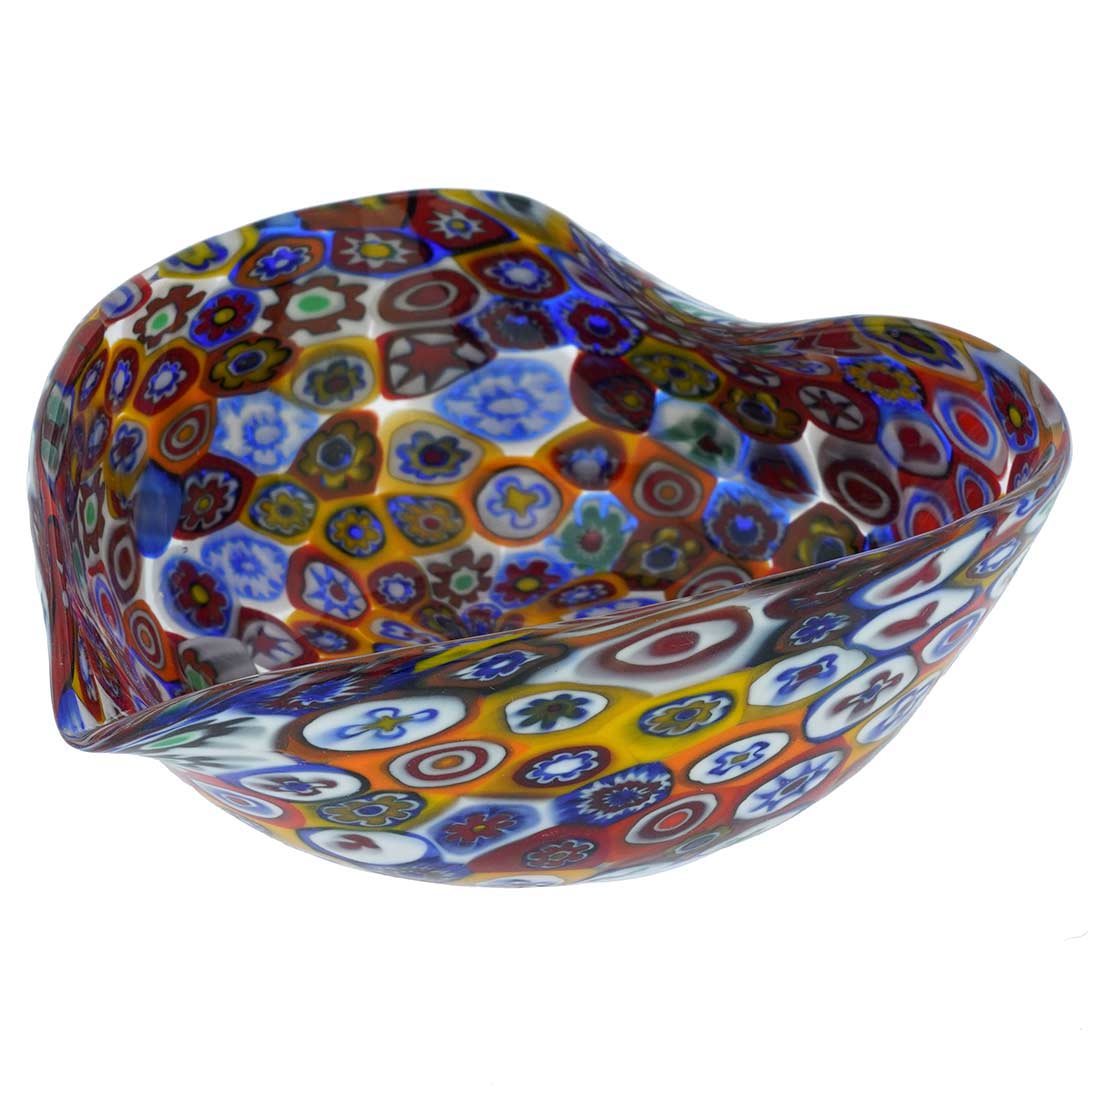 Murano Millefiori Decorative Heart Bowl - Multicolor